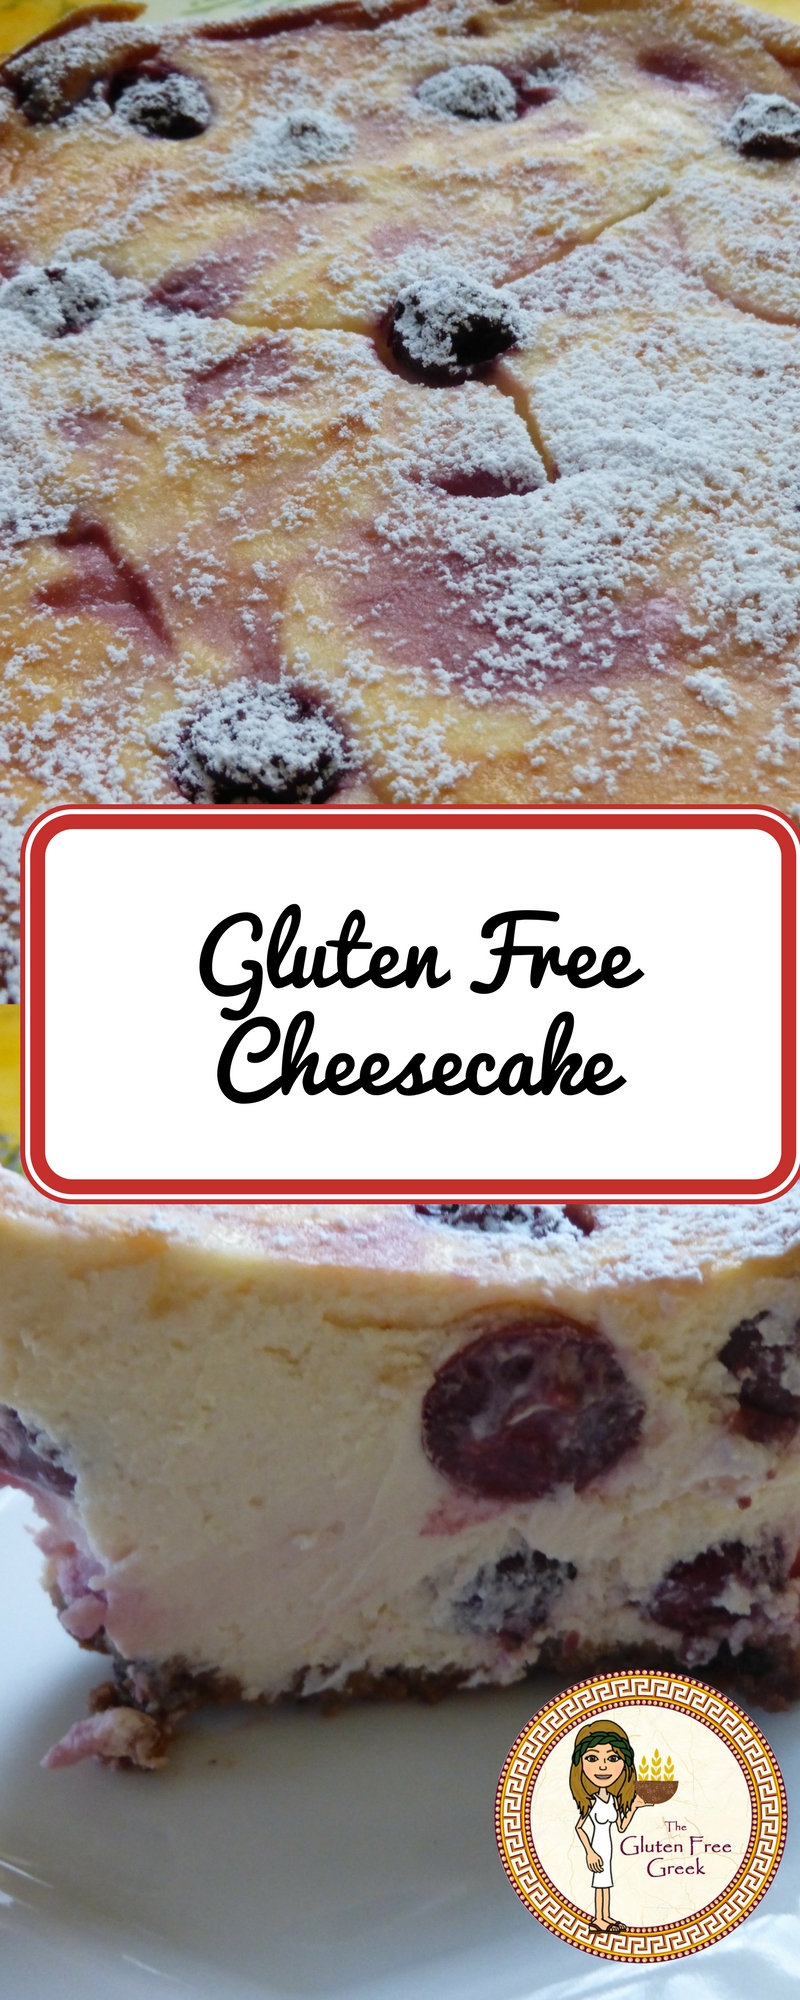 gluten free cheesecake pinterest